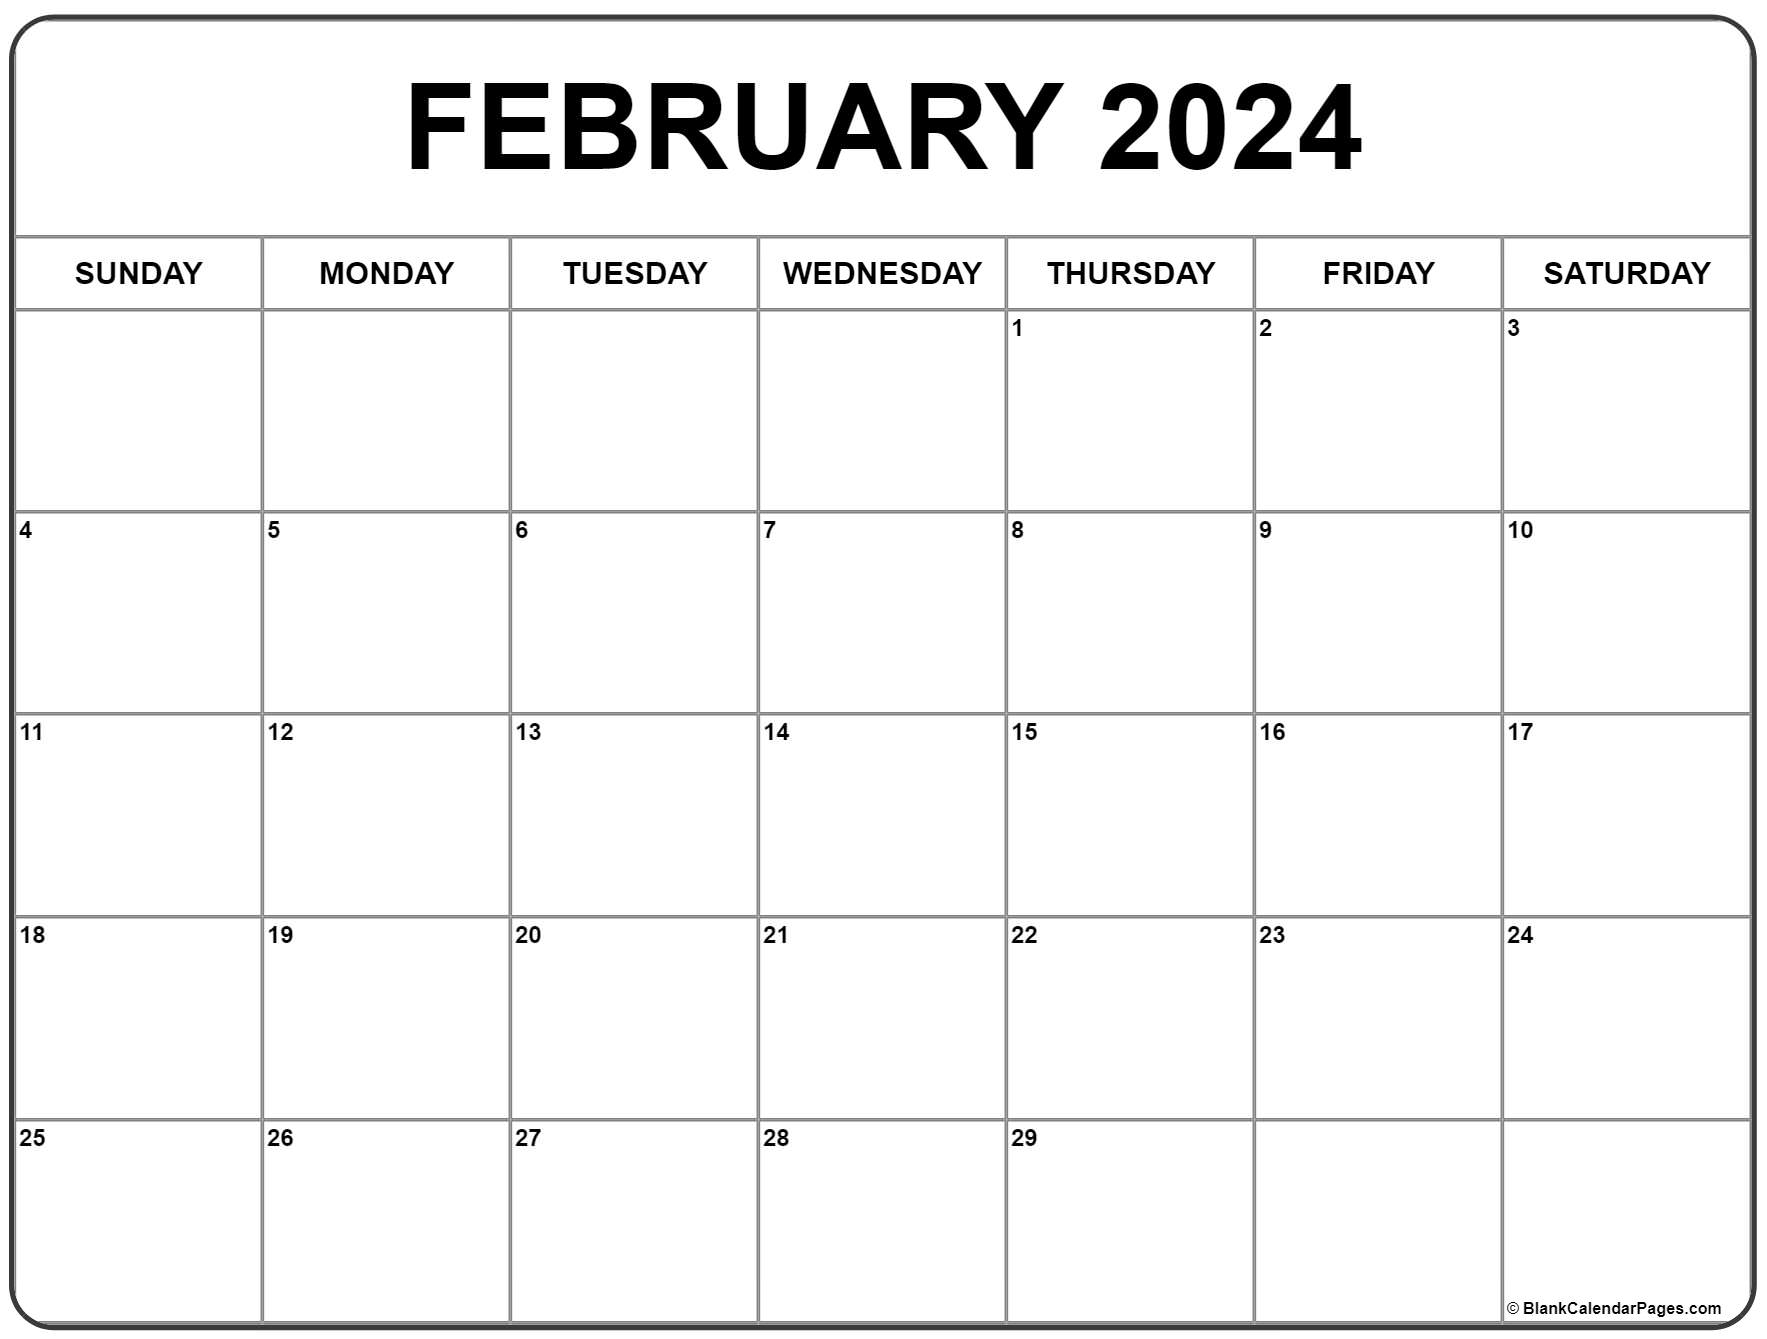 February 2024 Calendar | Free Printable Calendar for February Monthly Calendar 2024 Printable